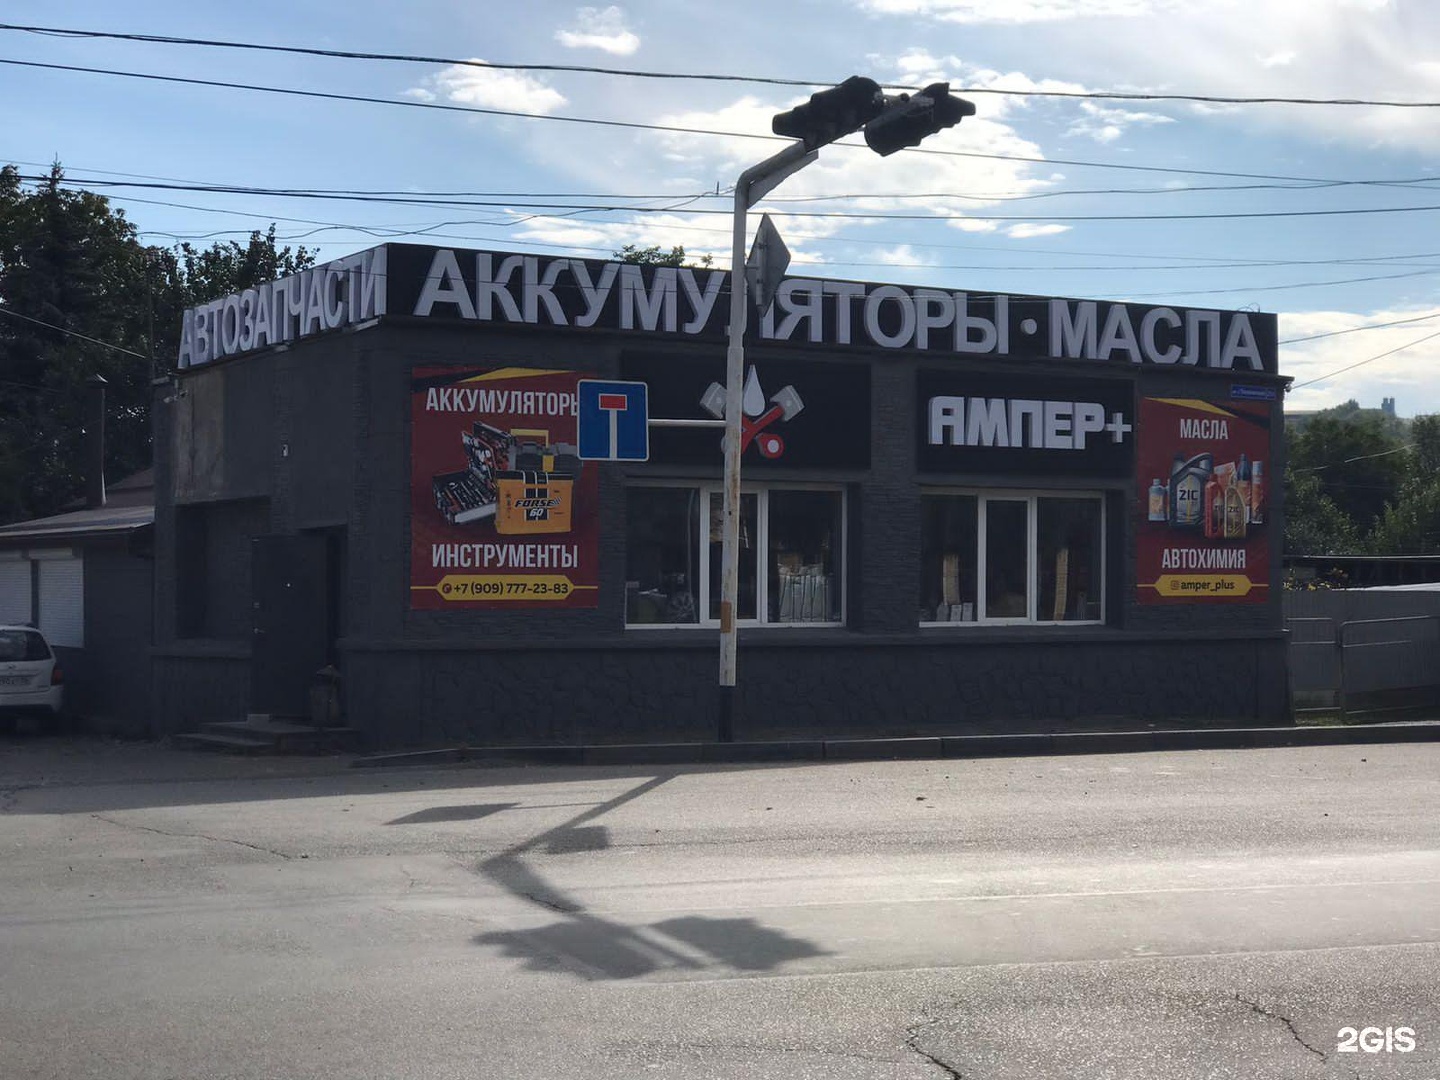 Фирма ампер. Ампер компания. Автомагазин в Михайловске Ставропольского.